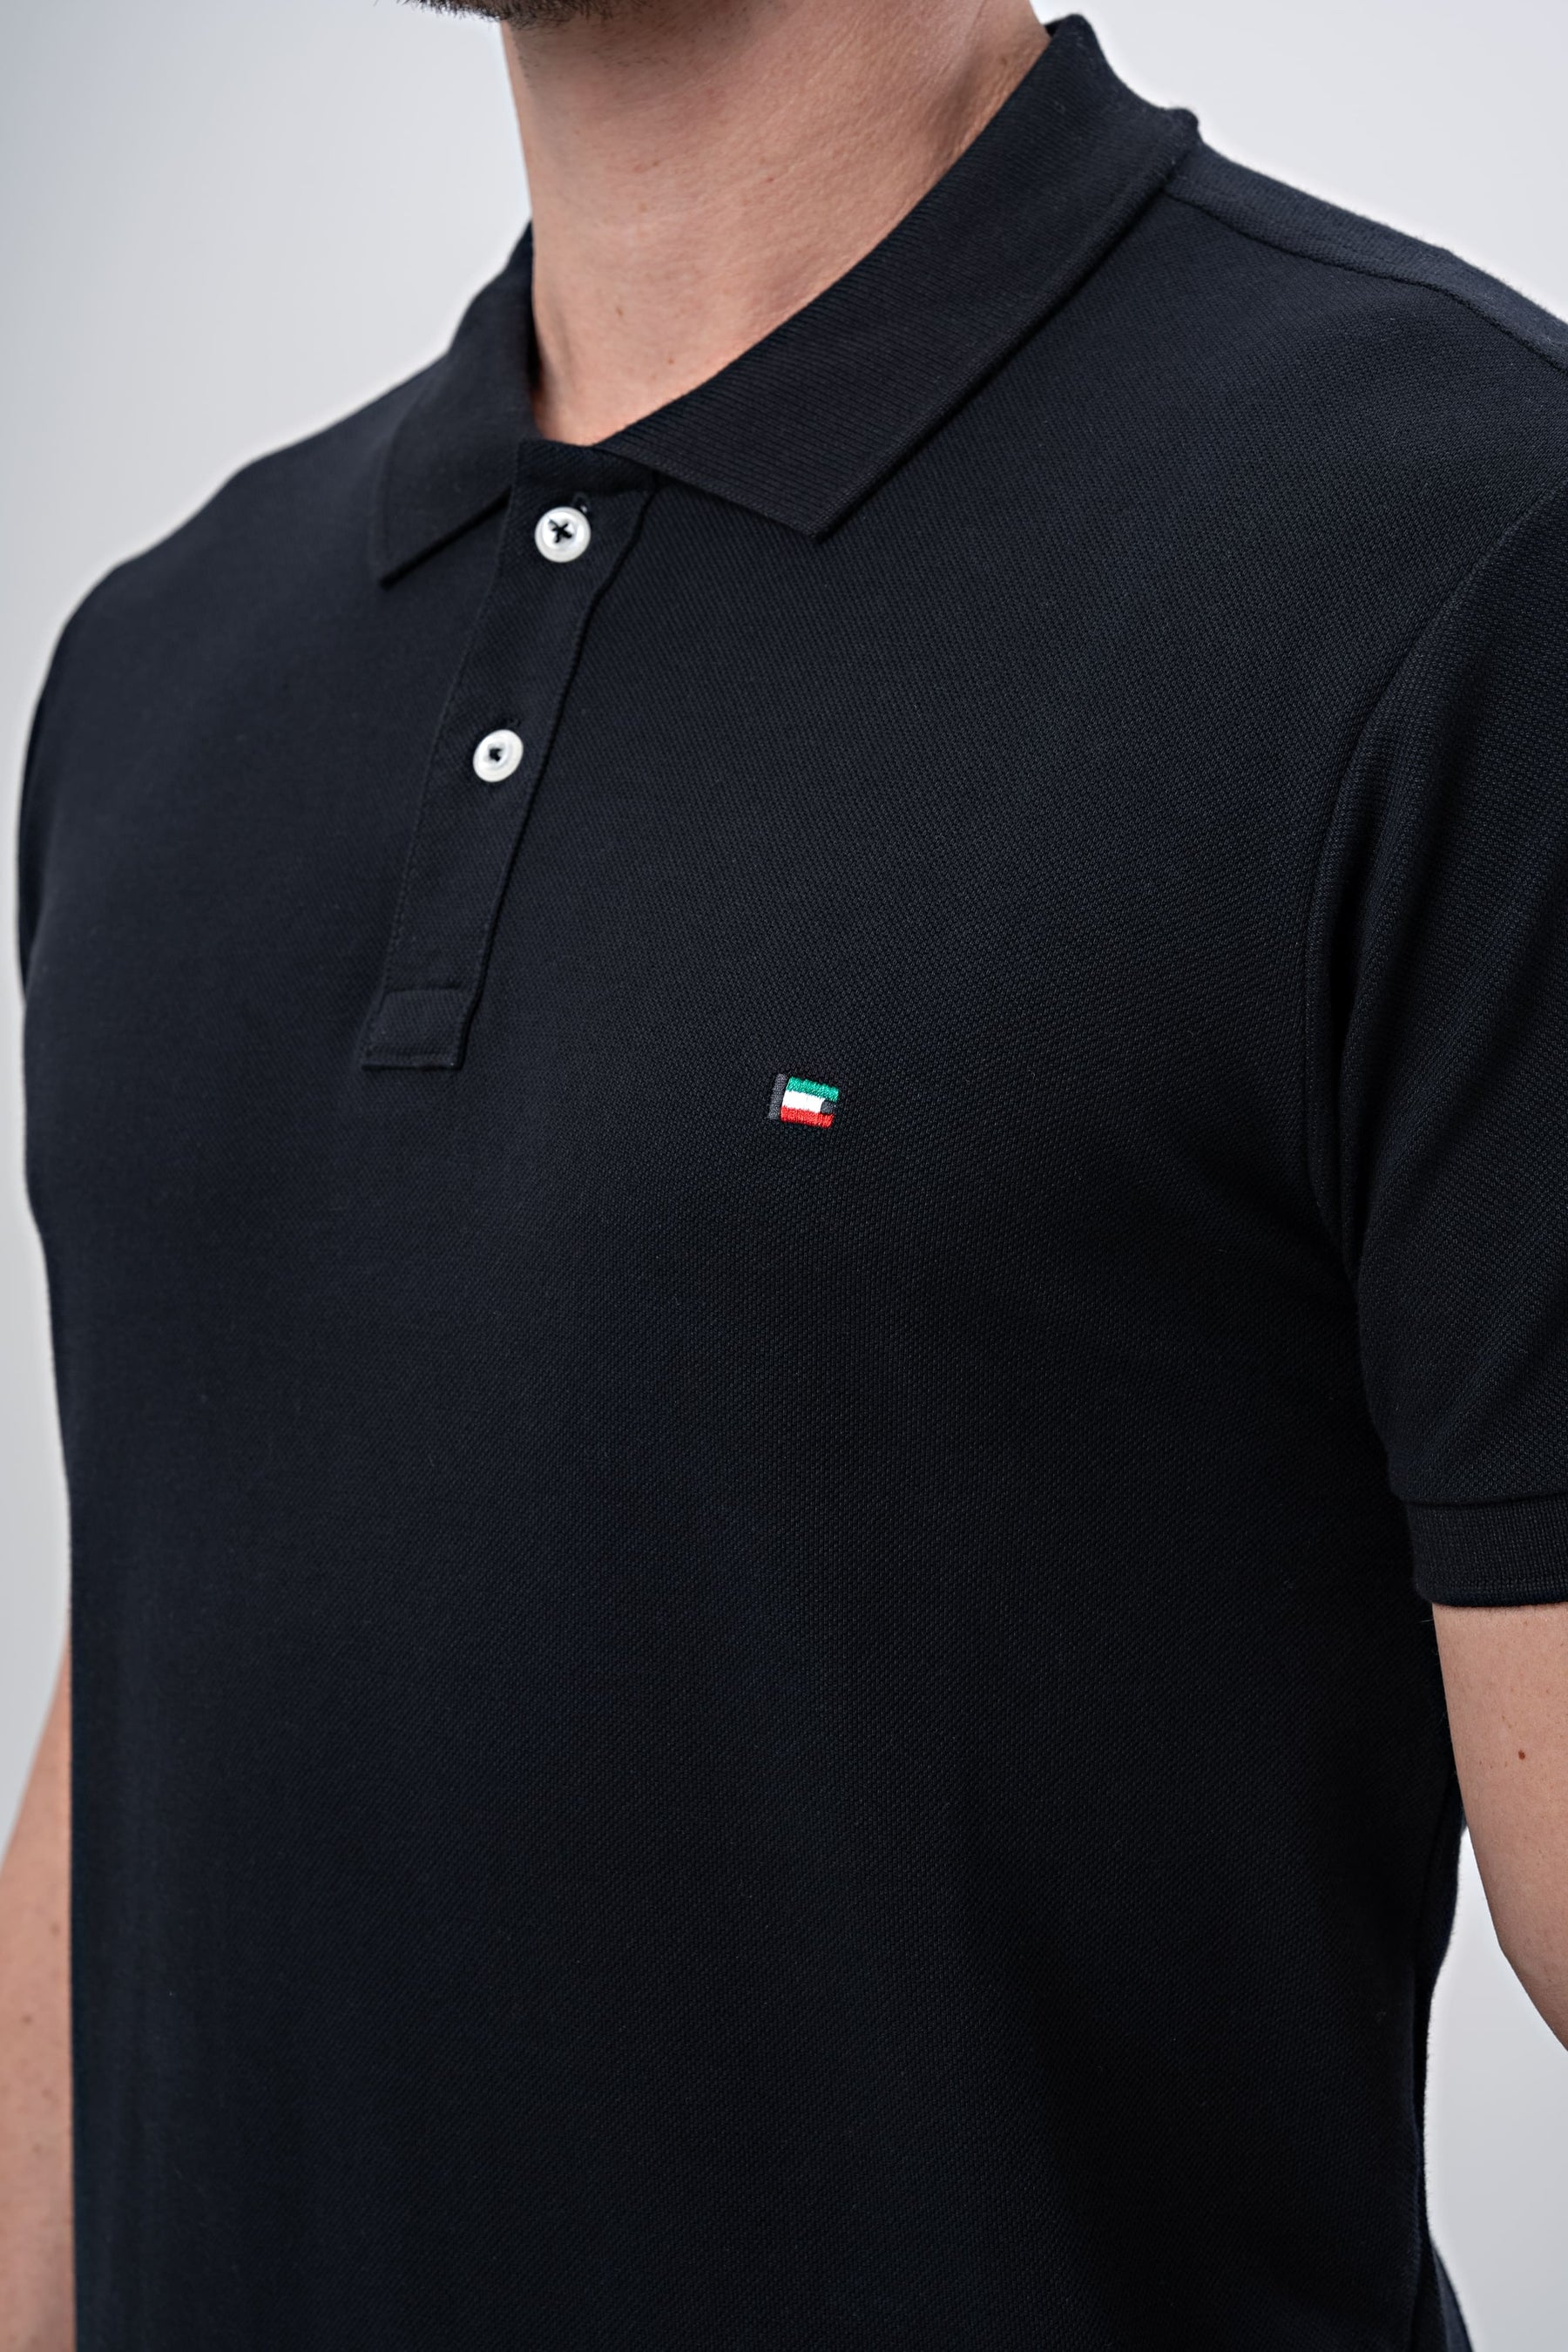 Camiseta Polo Enzo Milano - Hellik Store